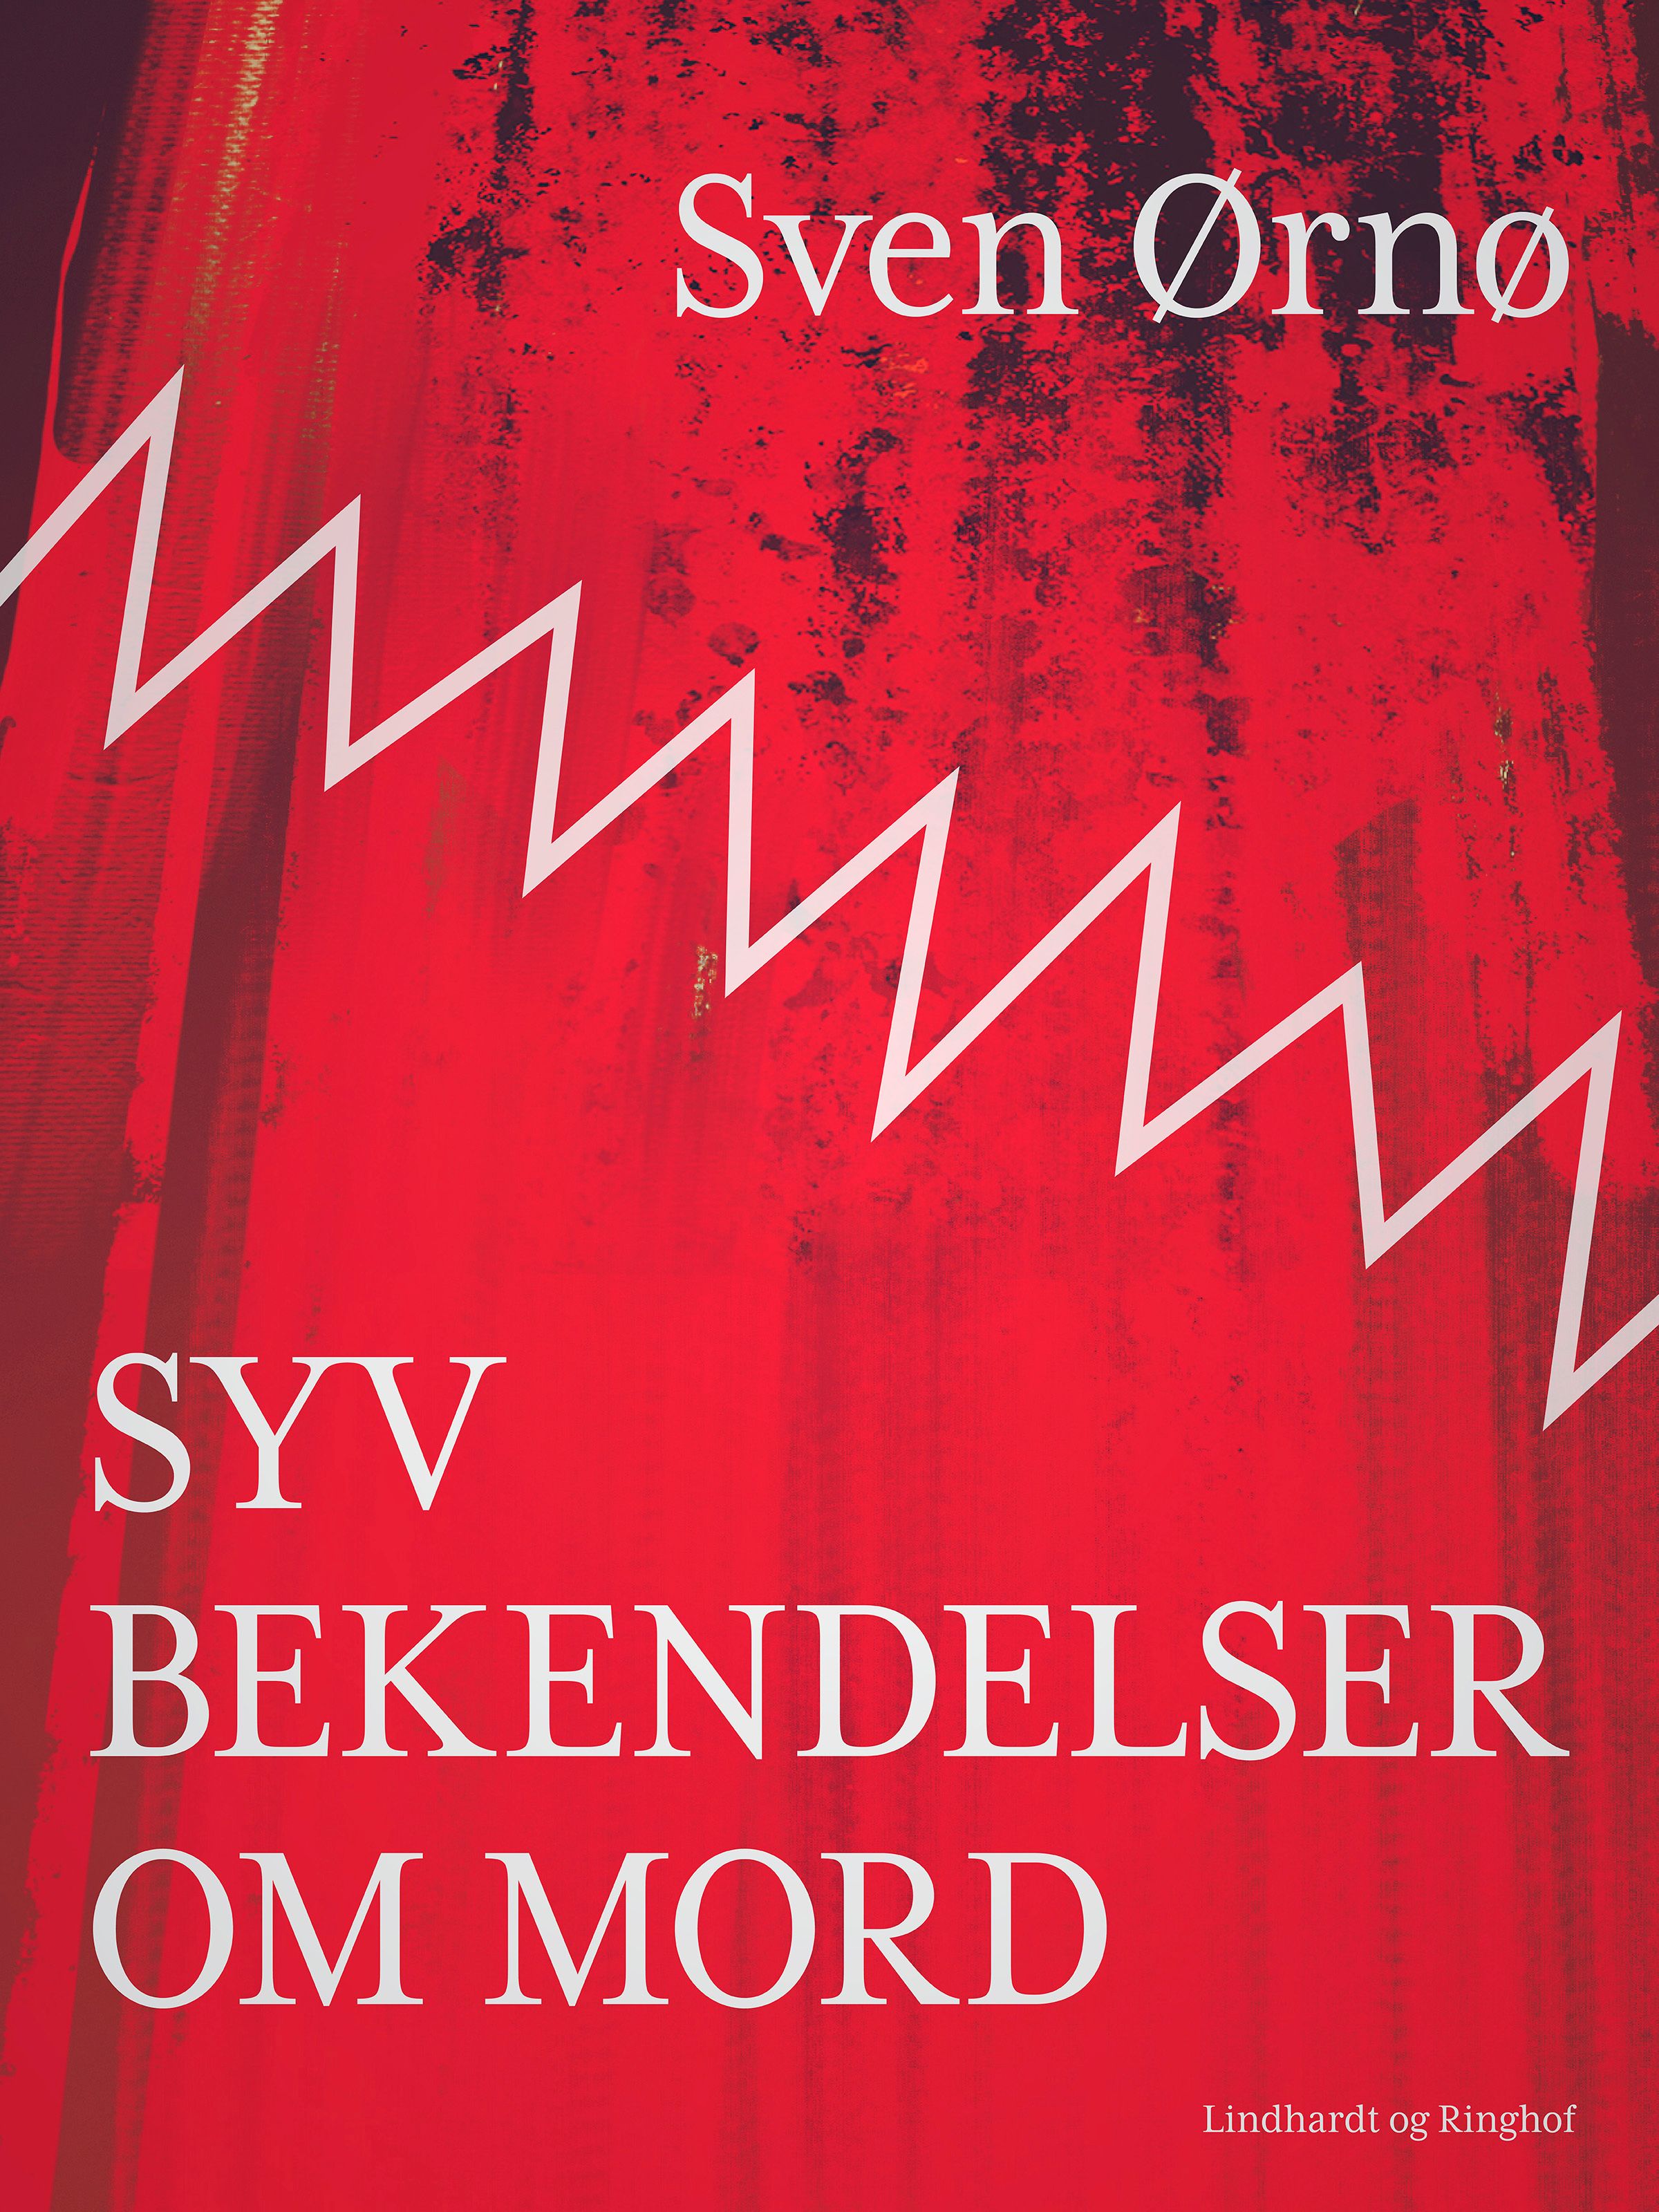 Syv bekendelser om mord, audiobook by Sven Ørnø